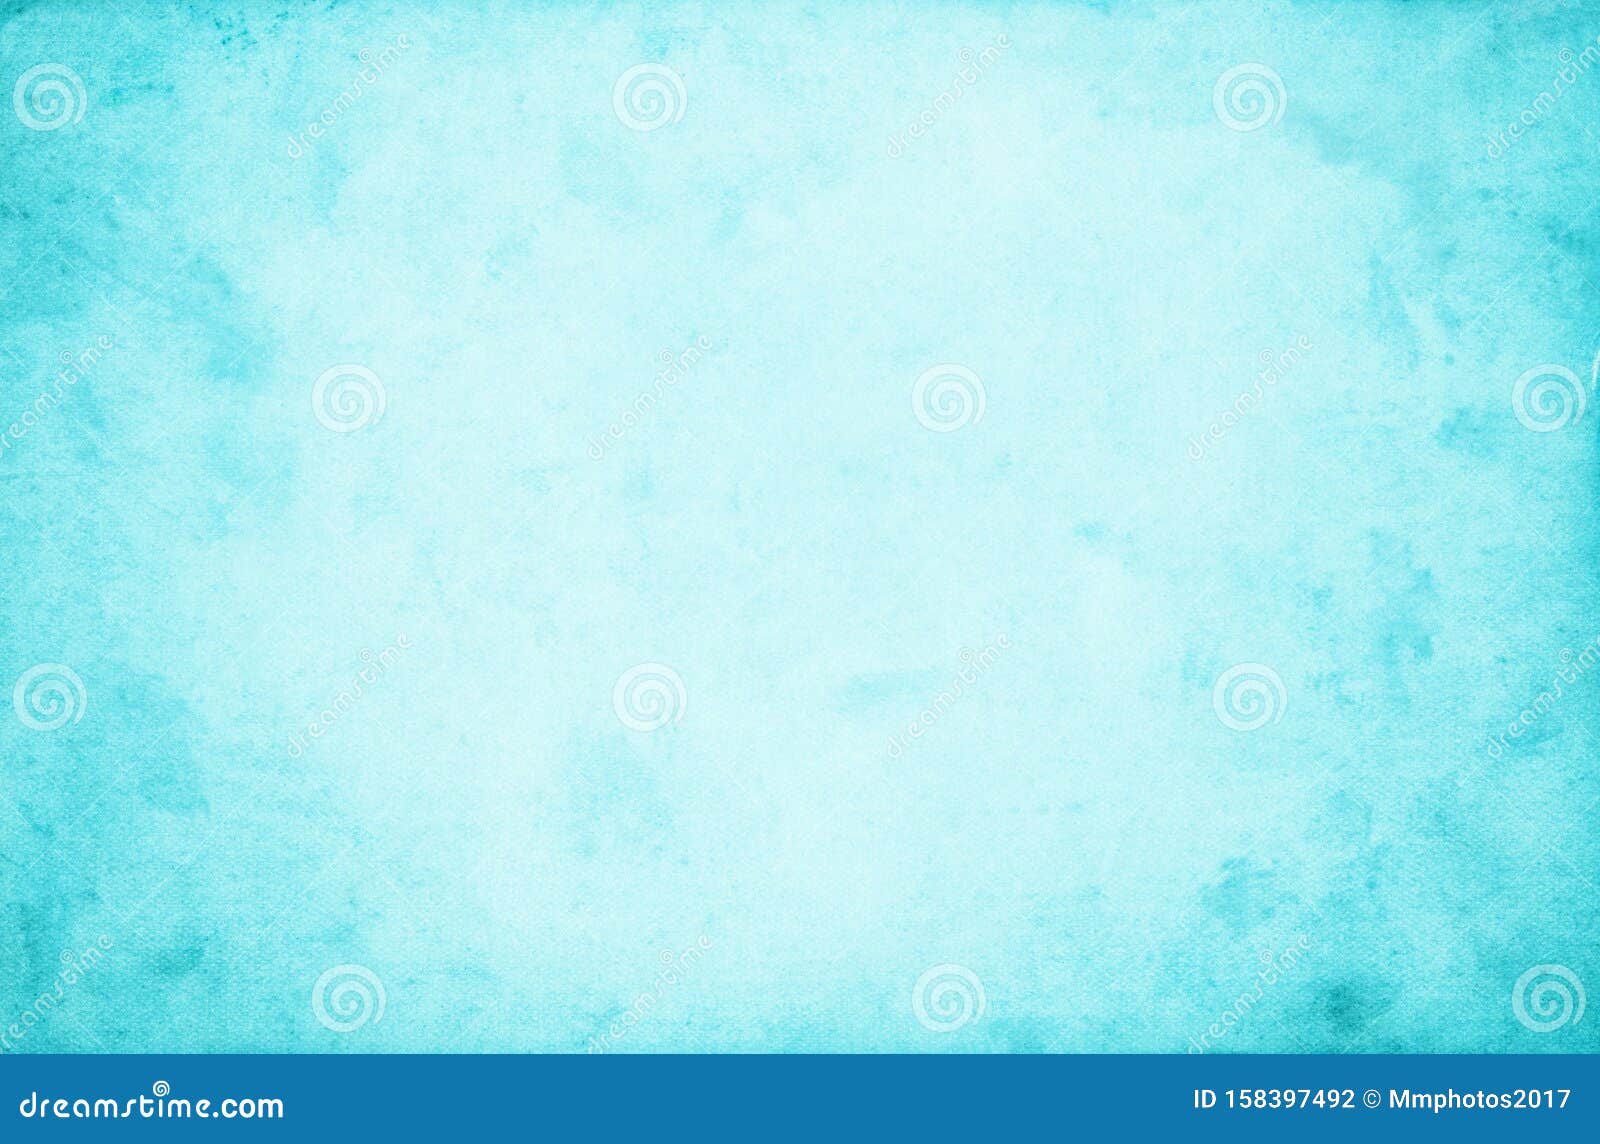 Details 100 Sky Blue Texture Background Hd Abzlocalmx